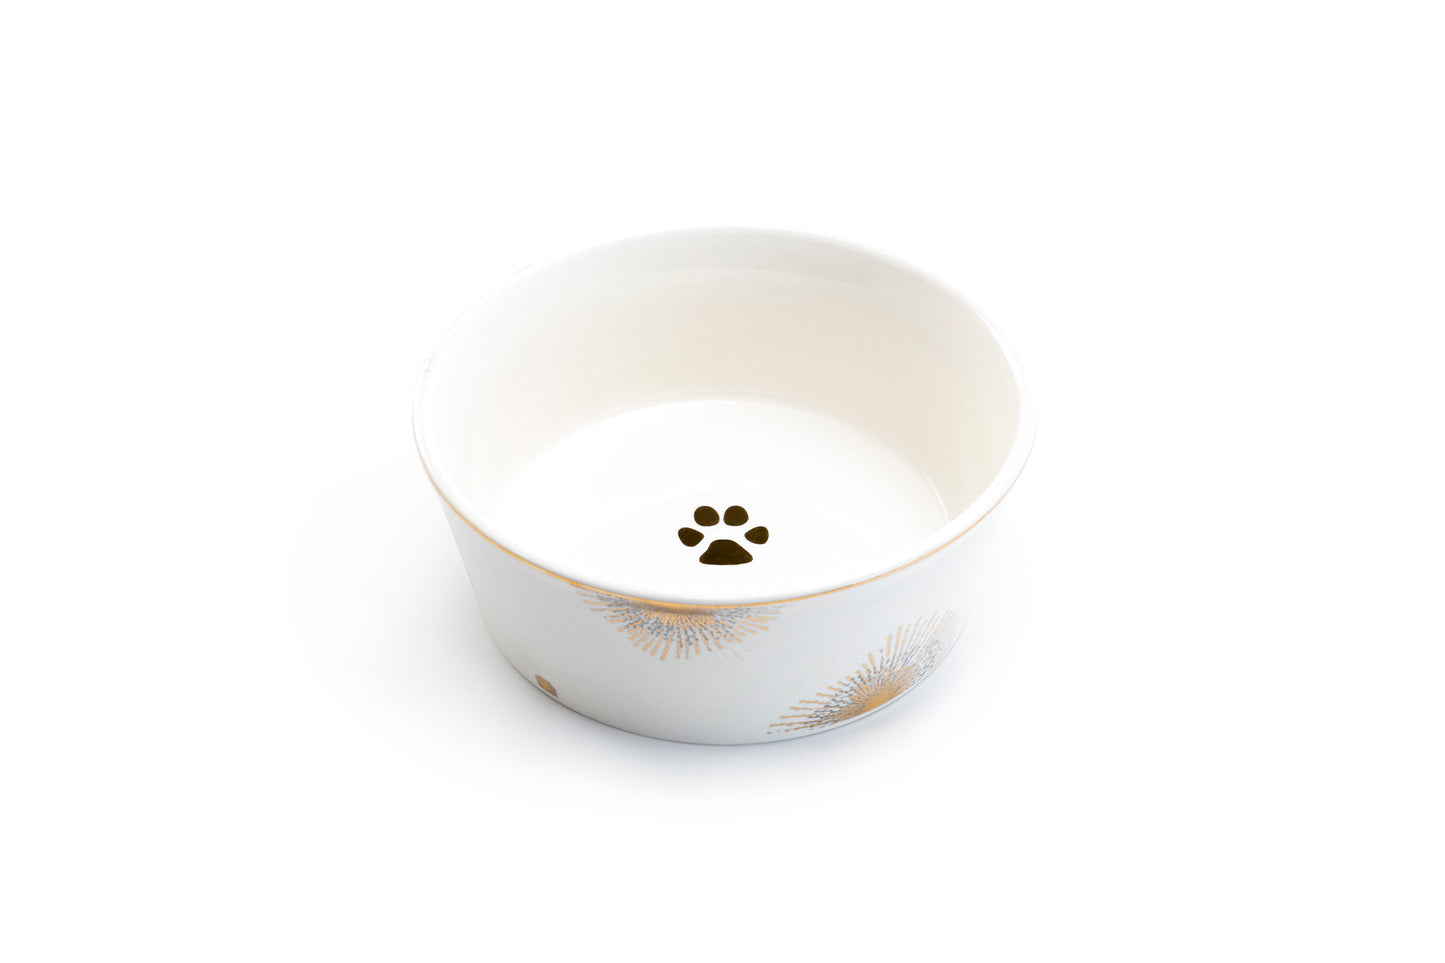 Silver Gold Sunburst Fine Porcelain Pet Bowl - 2 Sizes Available